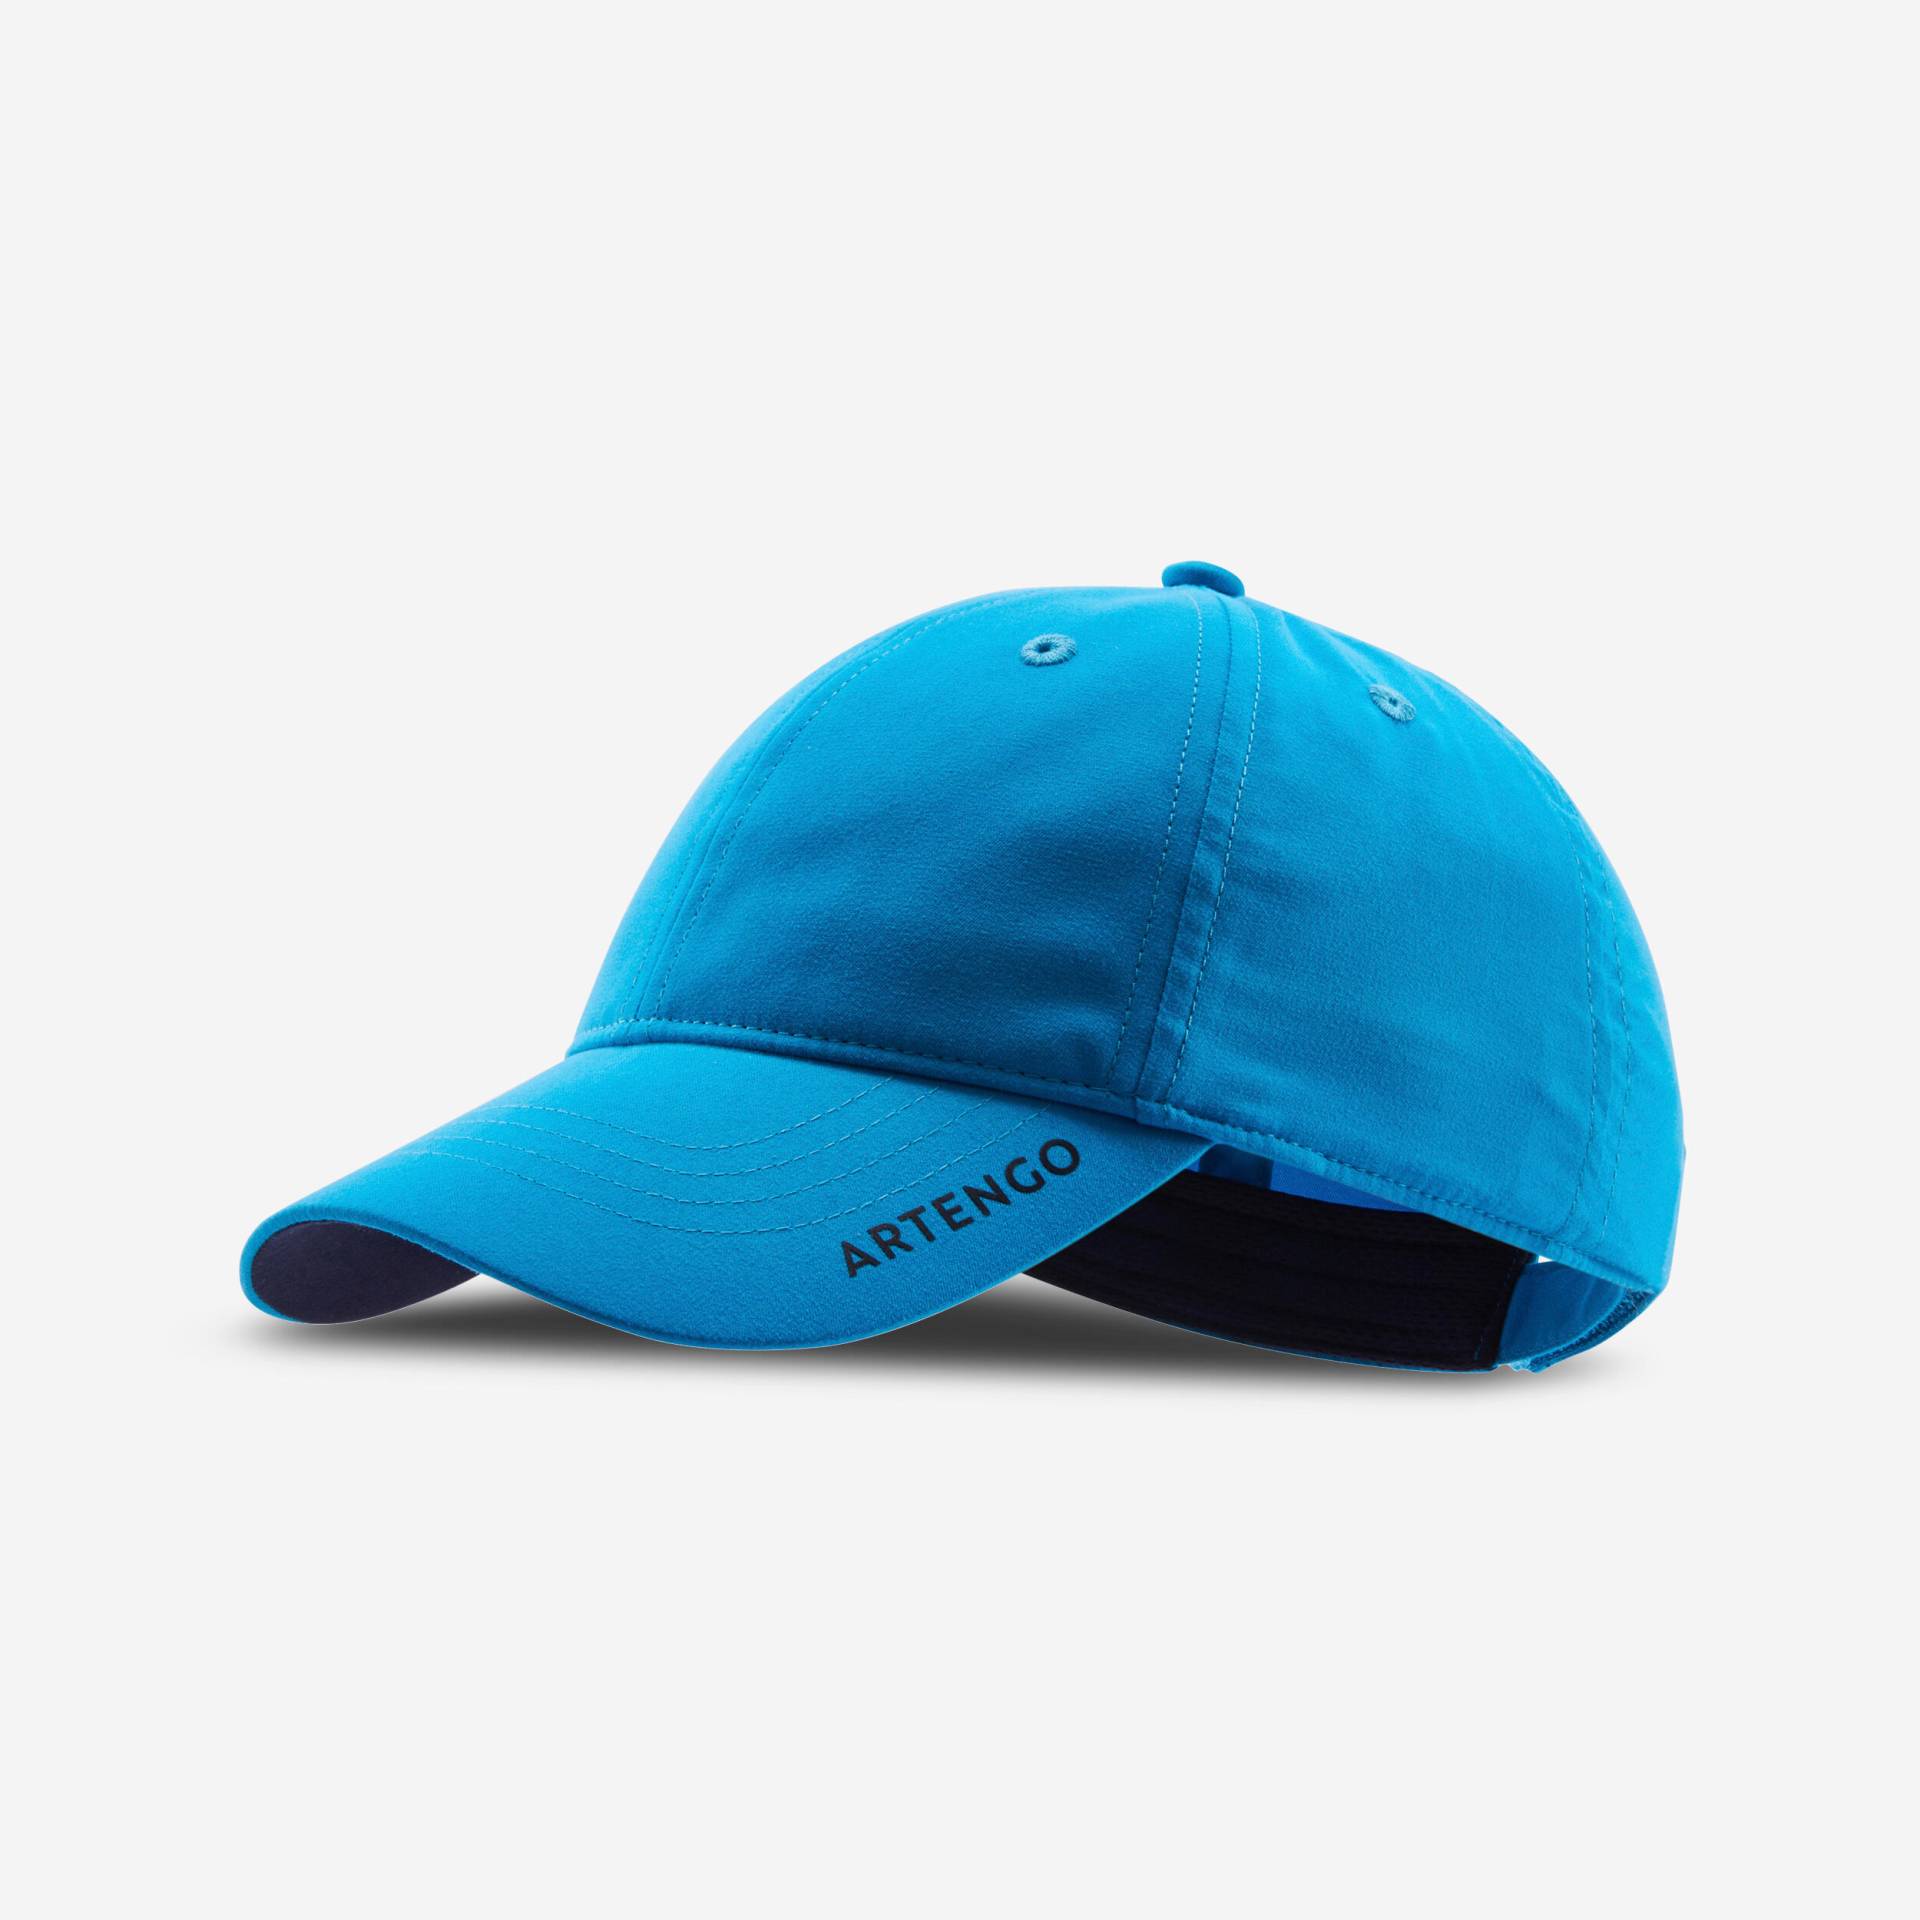 Schirmmütze Tennis-Cap TC 500 Gr. 54 türkis/blau von ARTENGO